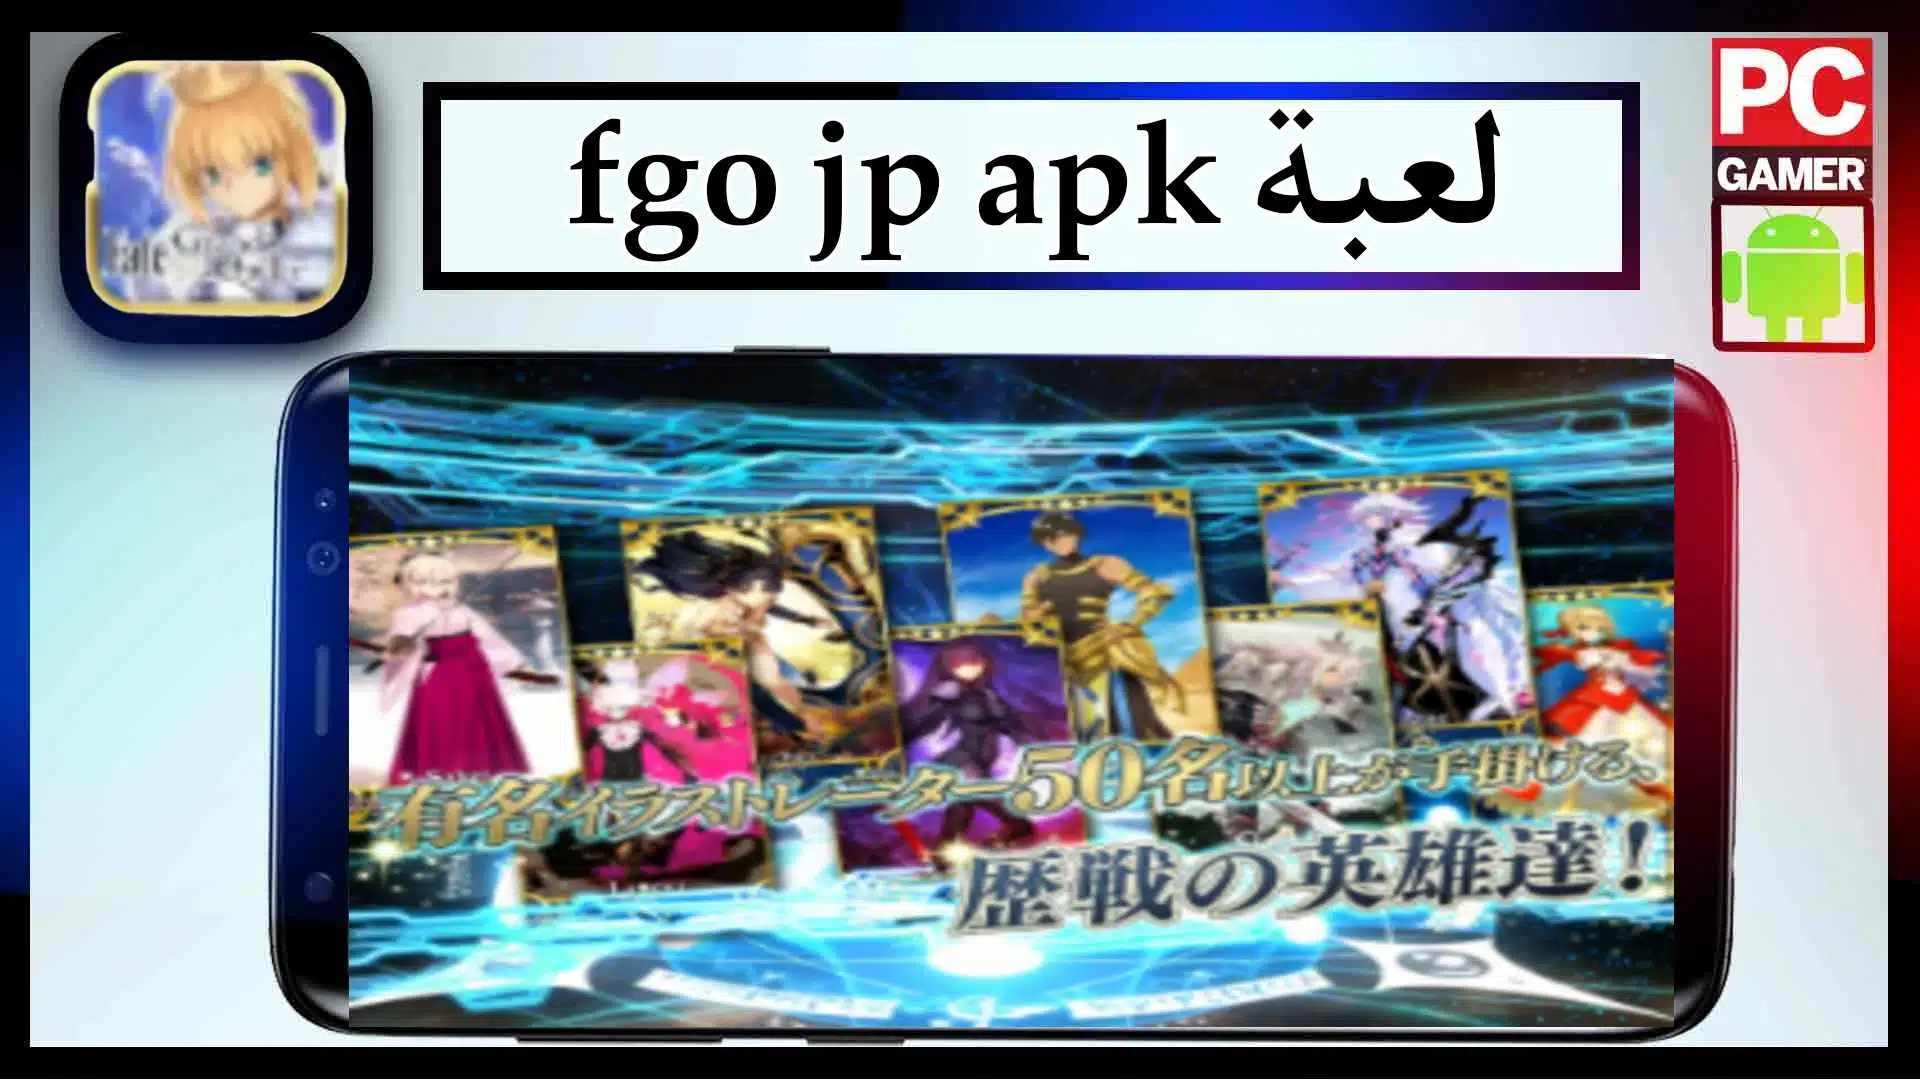 تحميل لعبة fgo jp apk mod للاندرود وللايفون اخر اصدار 2023 مجانا 2